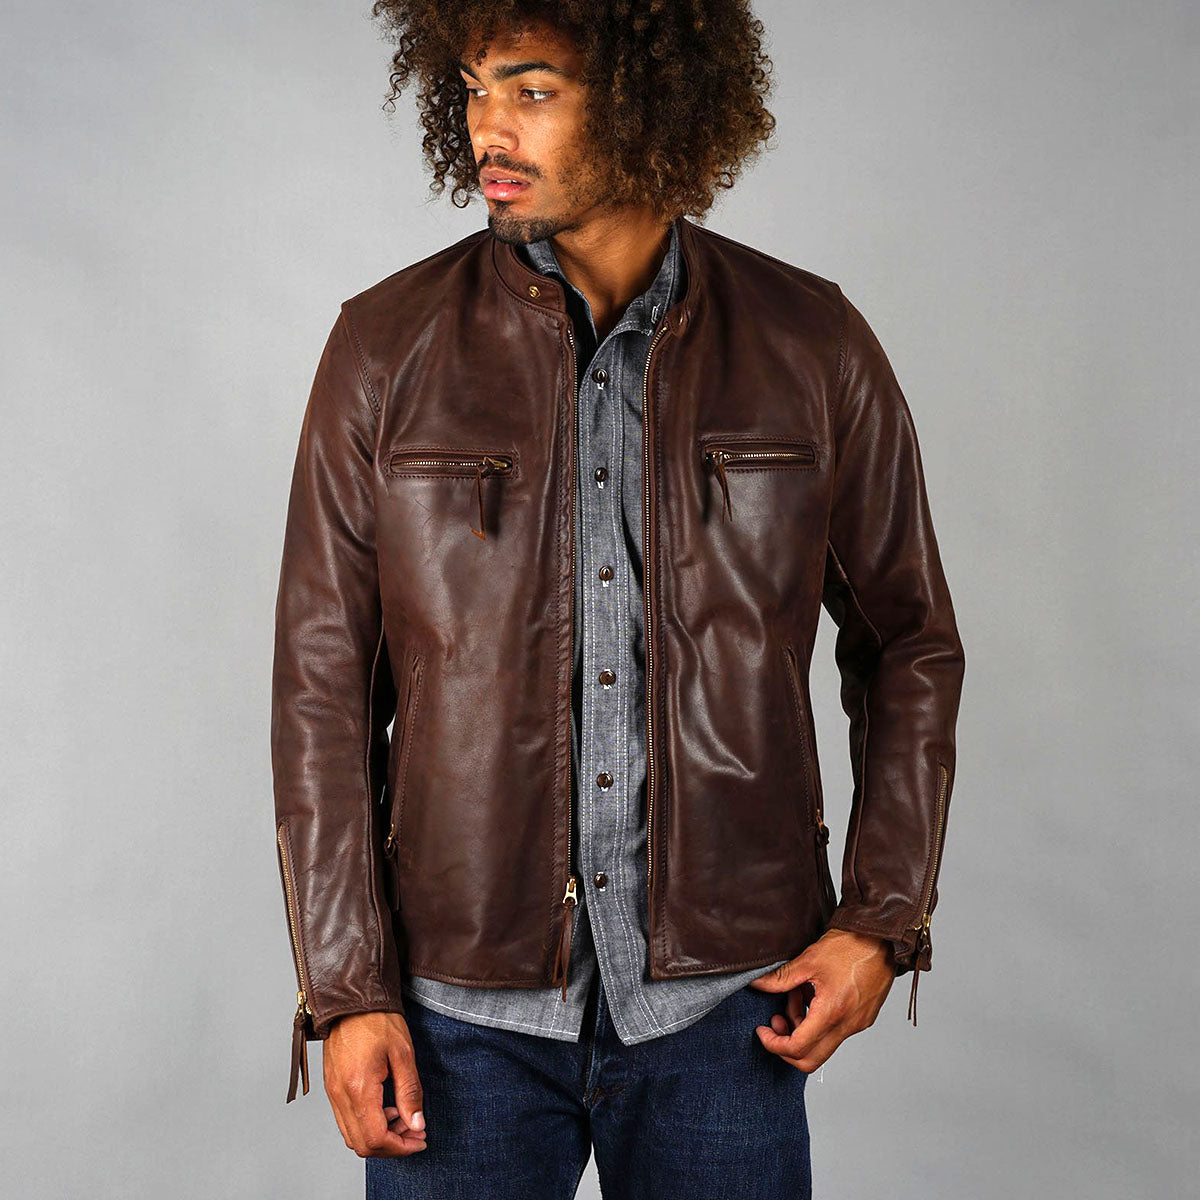 colouAero Leather Cafe racer jacket vintage